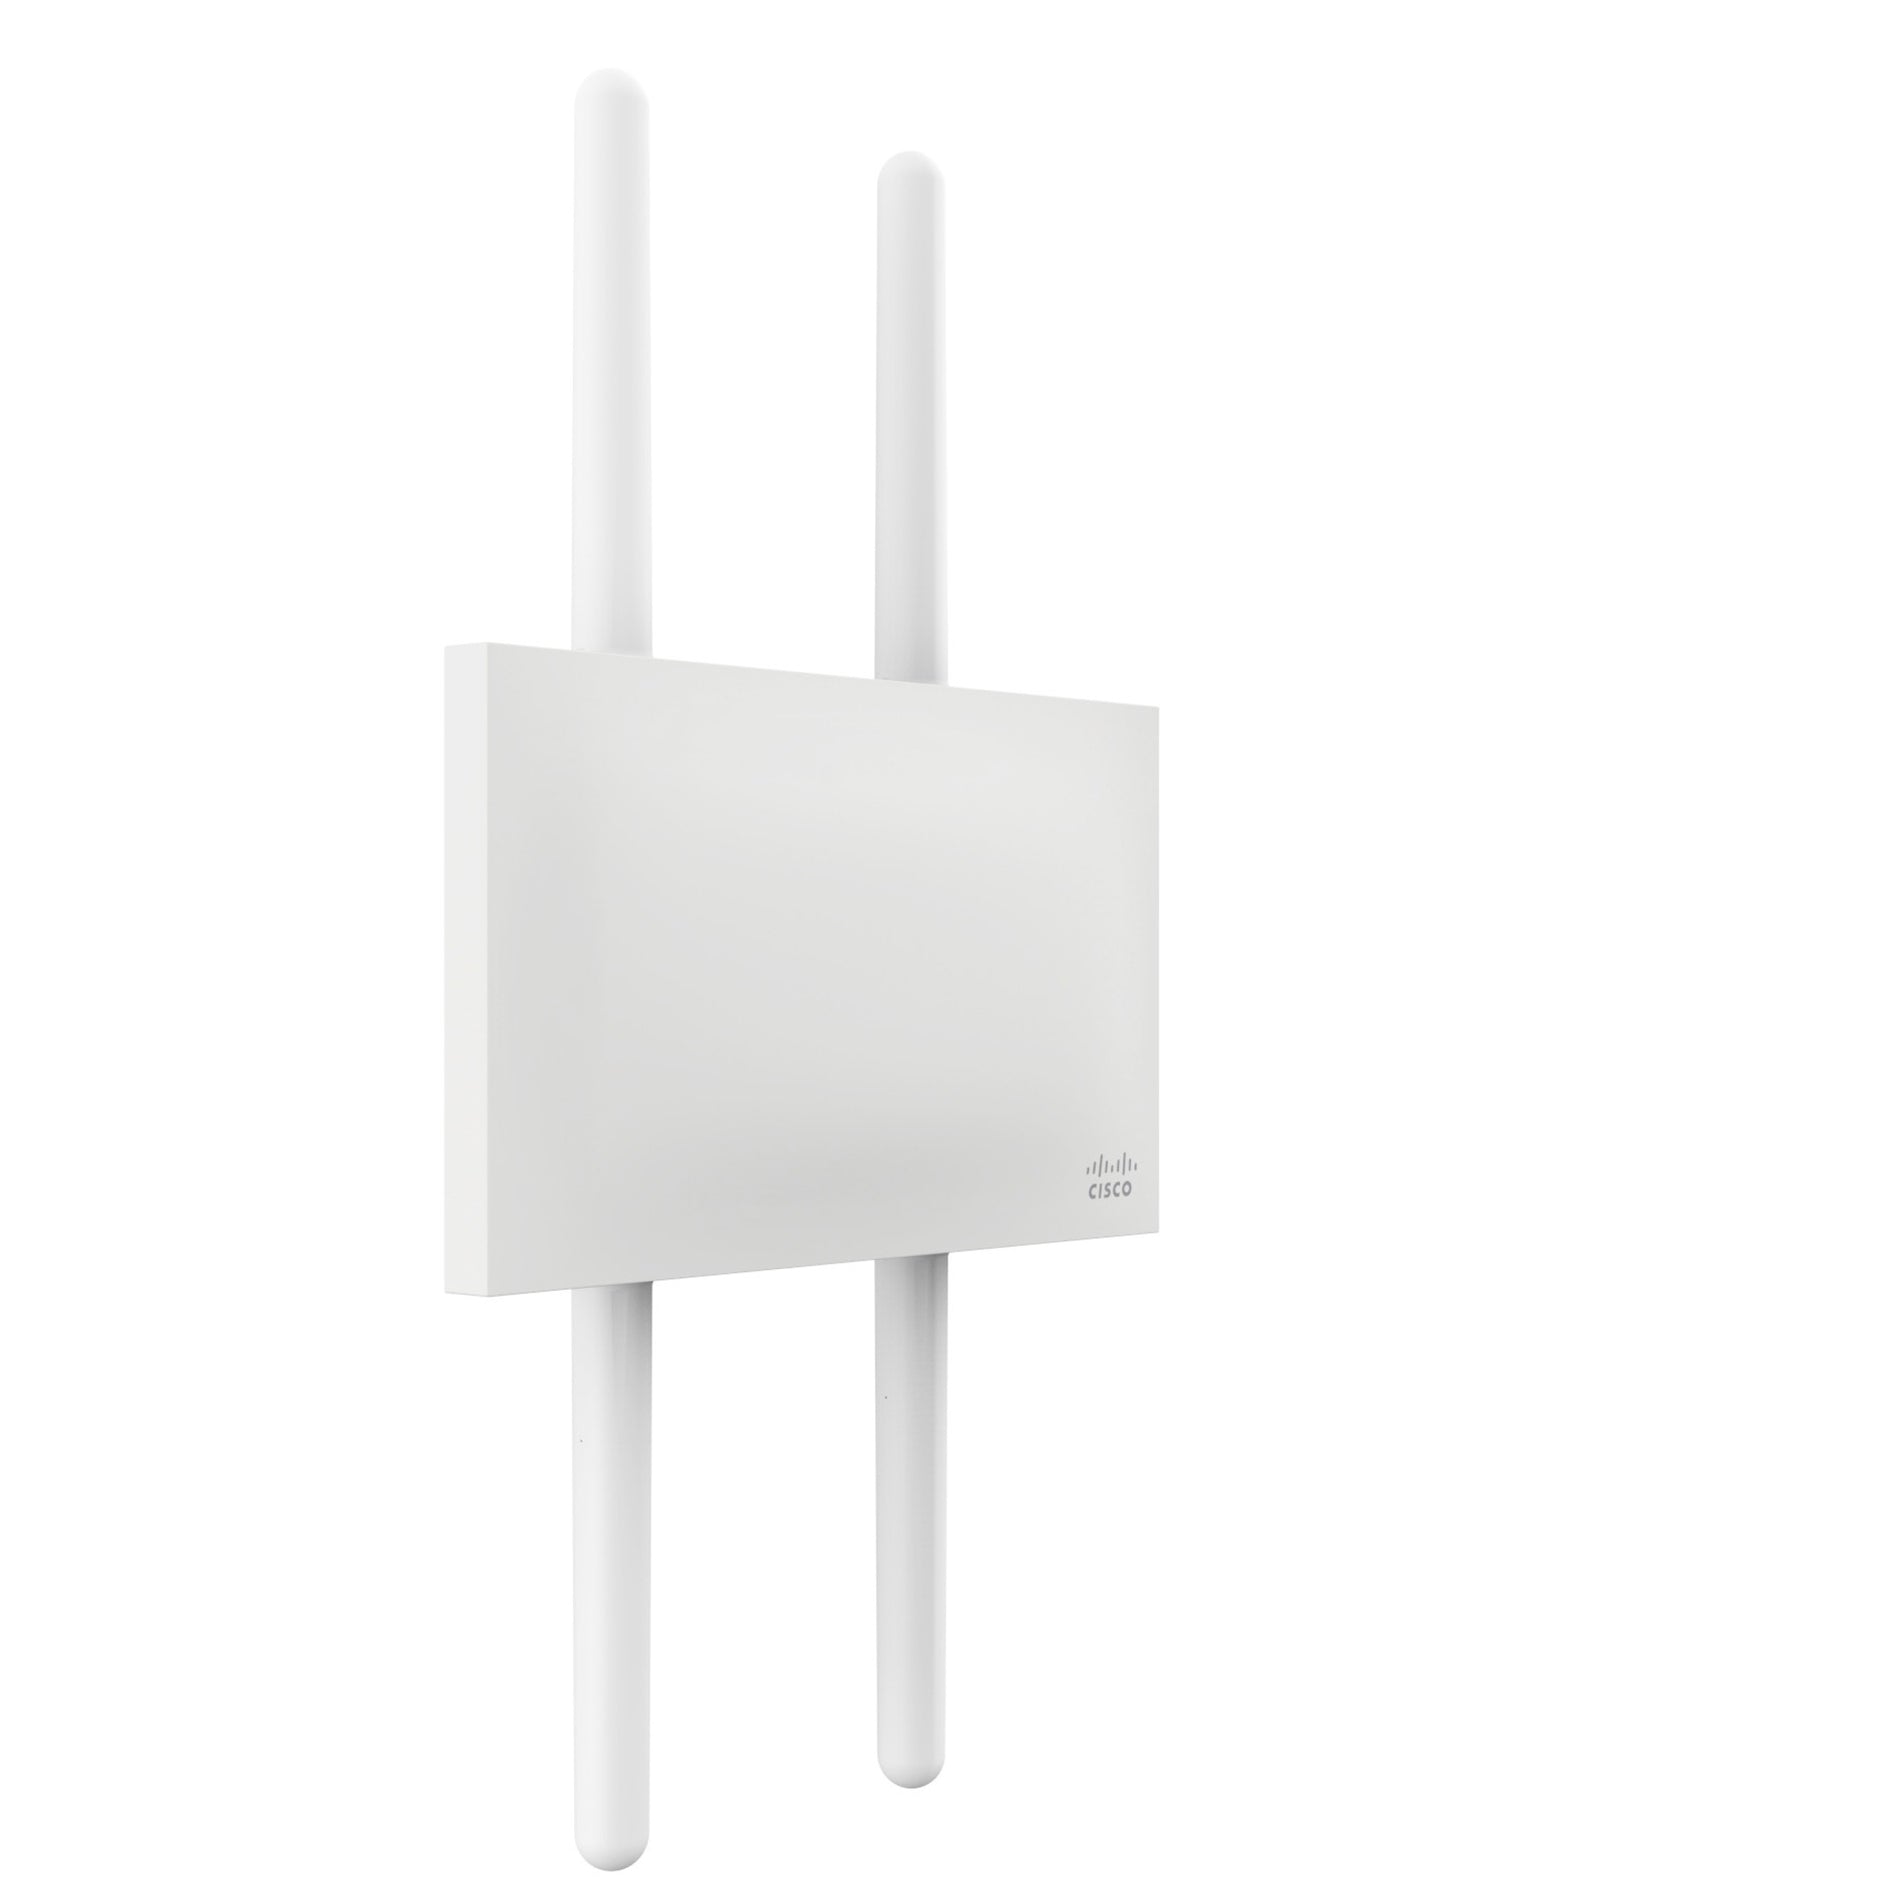 Meraki MR74 IEEE 802.11ac 1.30 Gbit/s Wireless Access Point (MR74-HW)